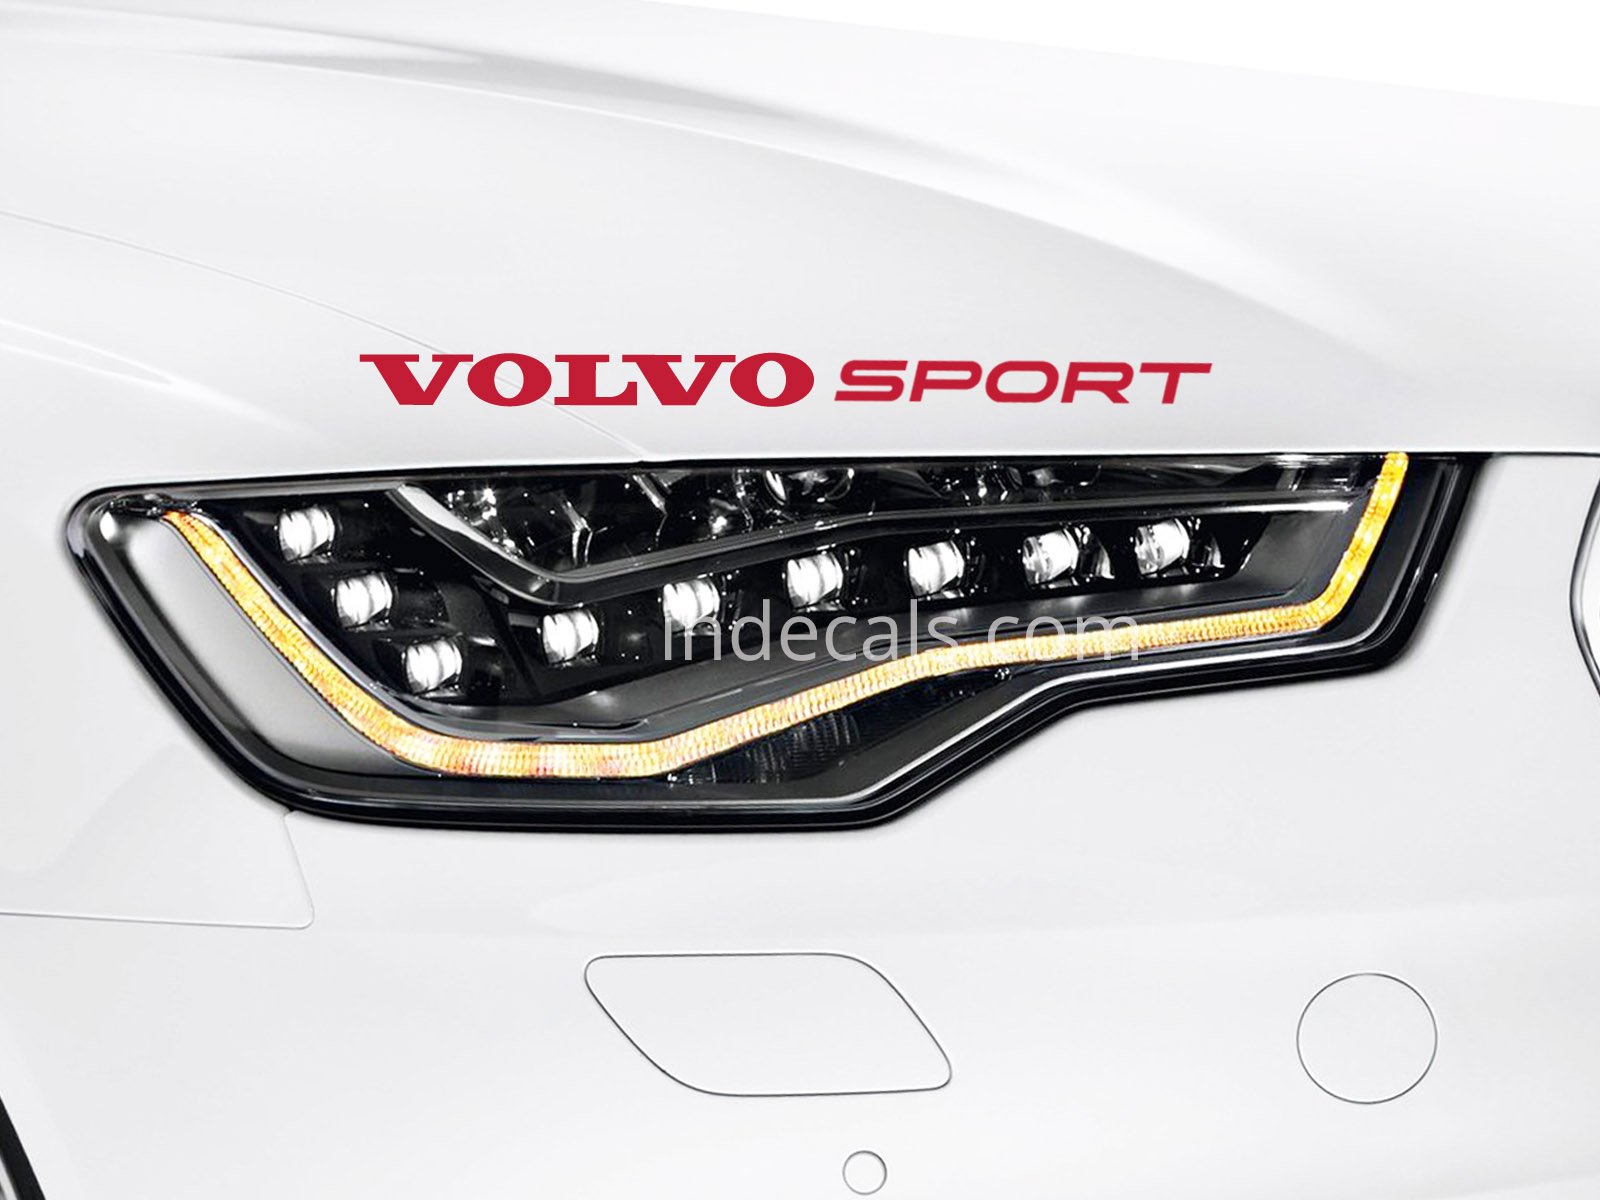 1 x Volvo Sport Sticker - Red